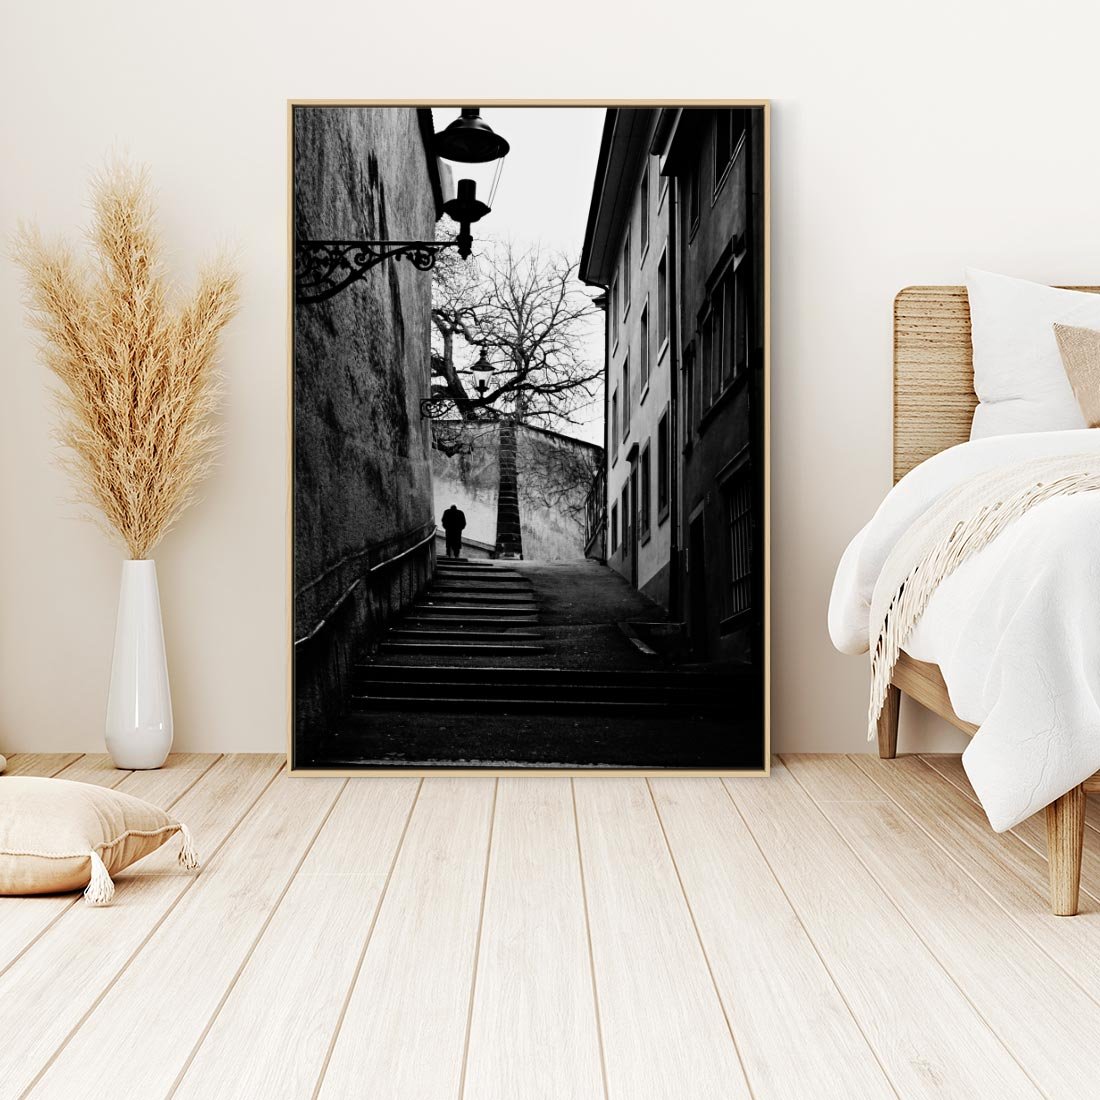 Obraz w ramie 50x70 - Ukryta Uliczka - czarno białe zdjęcie, schody - rama drewno